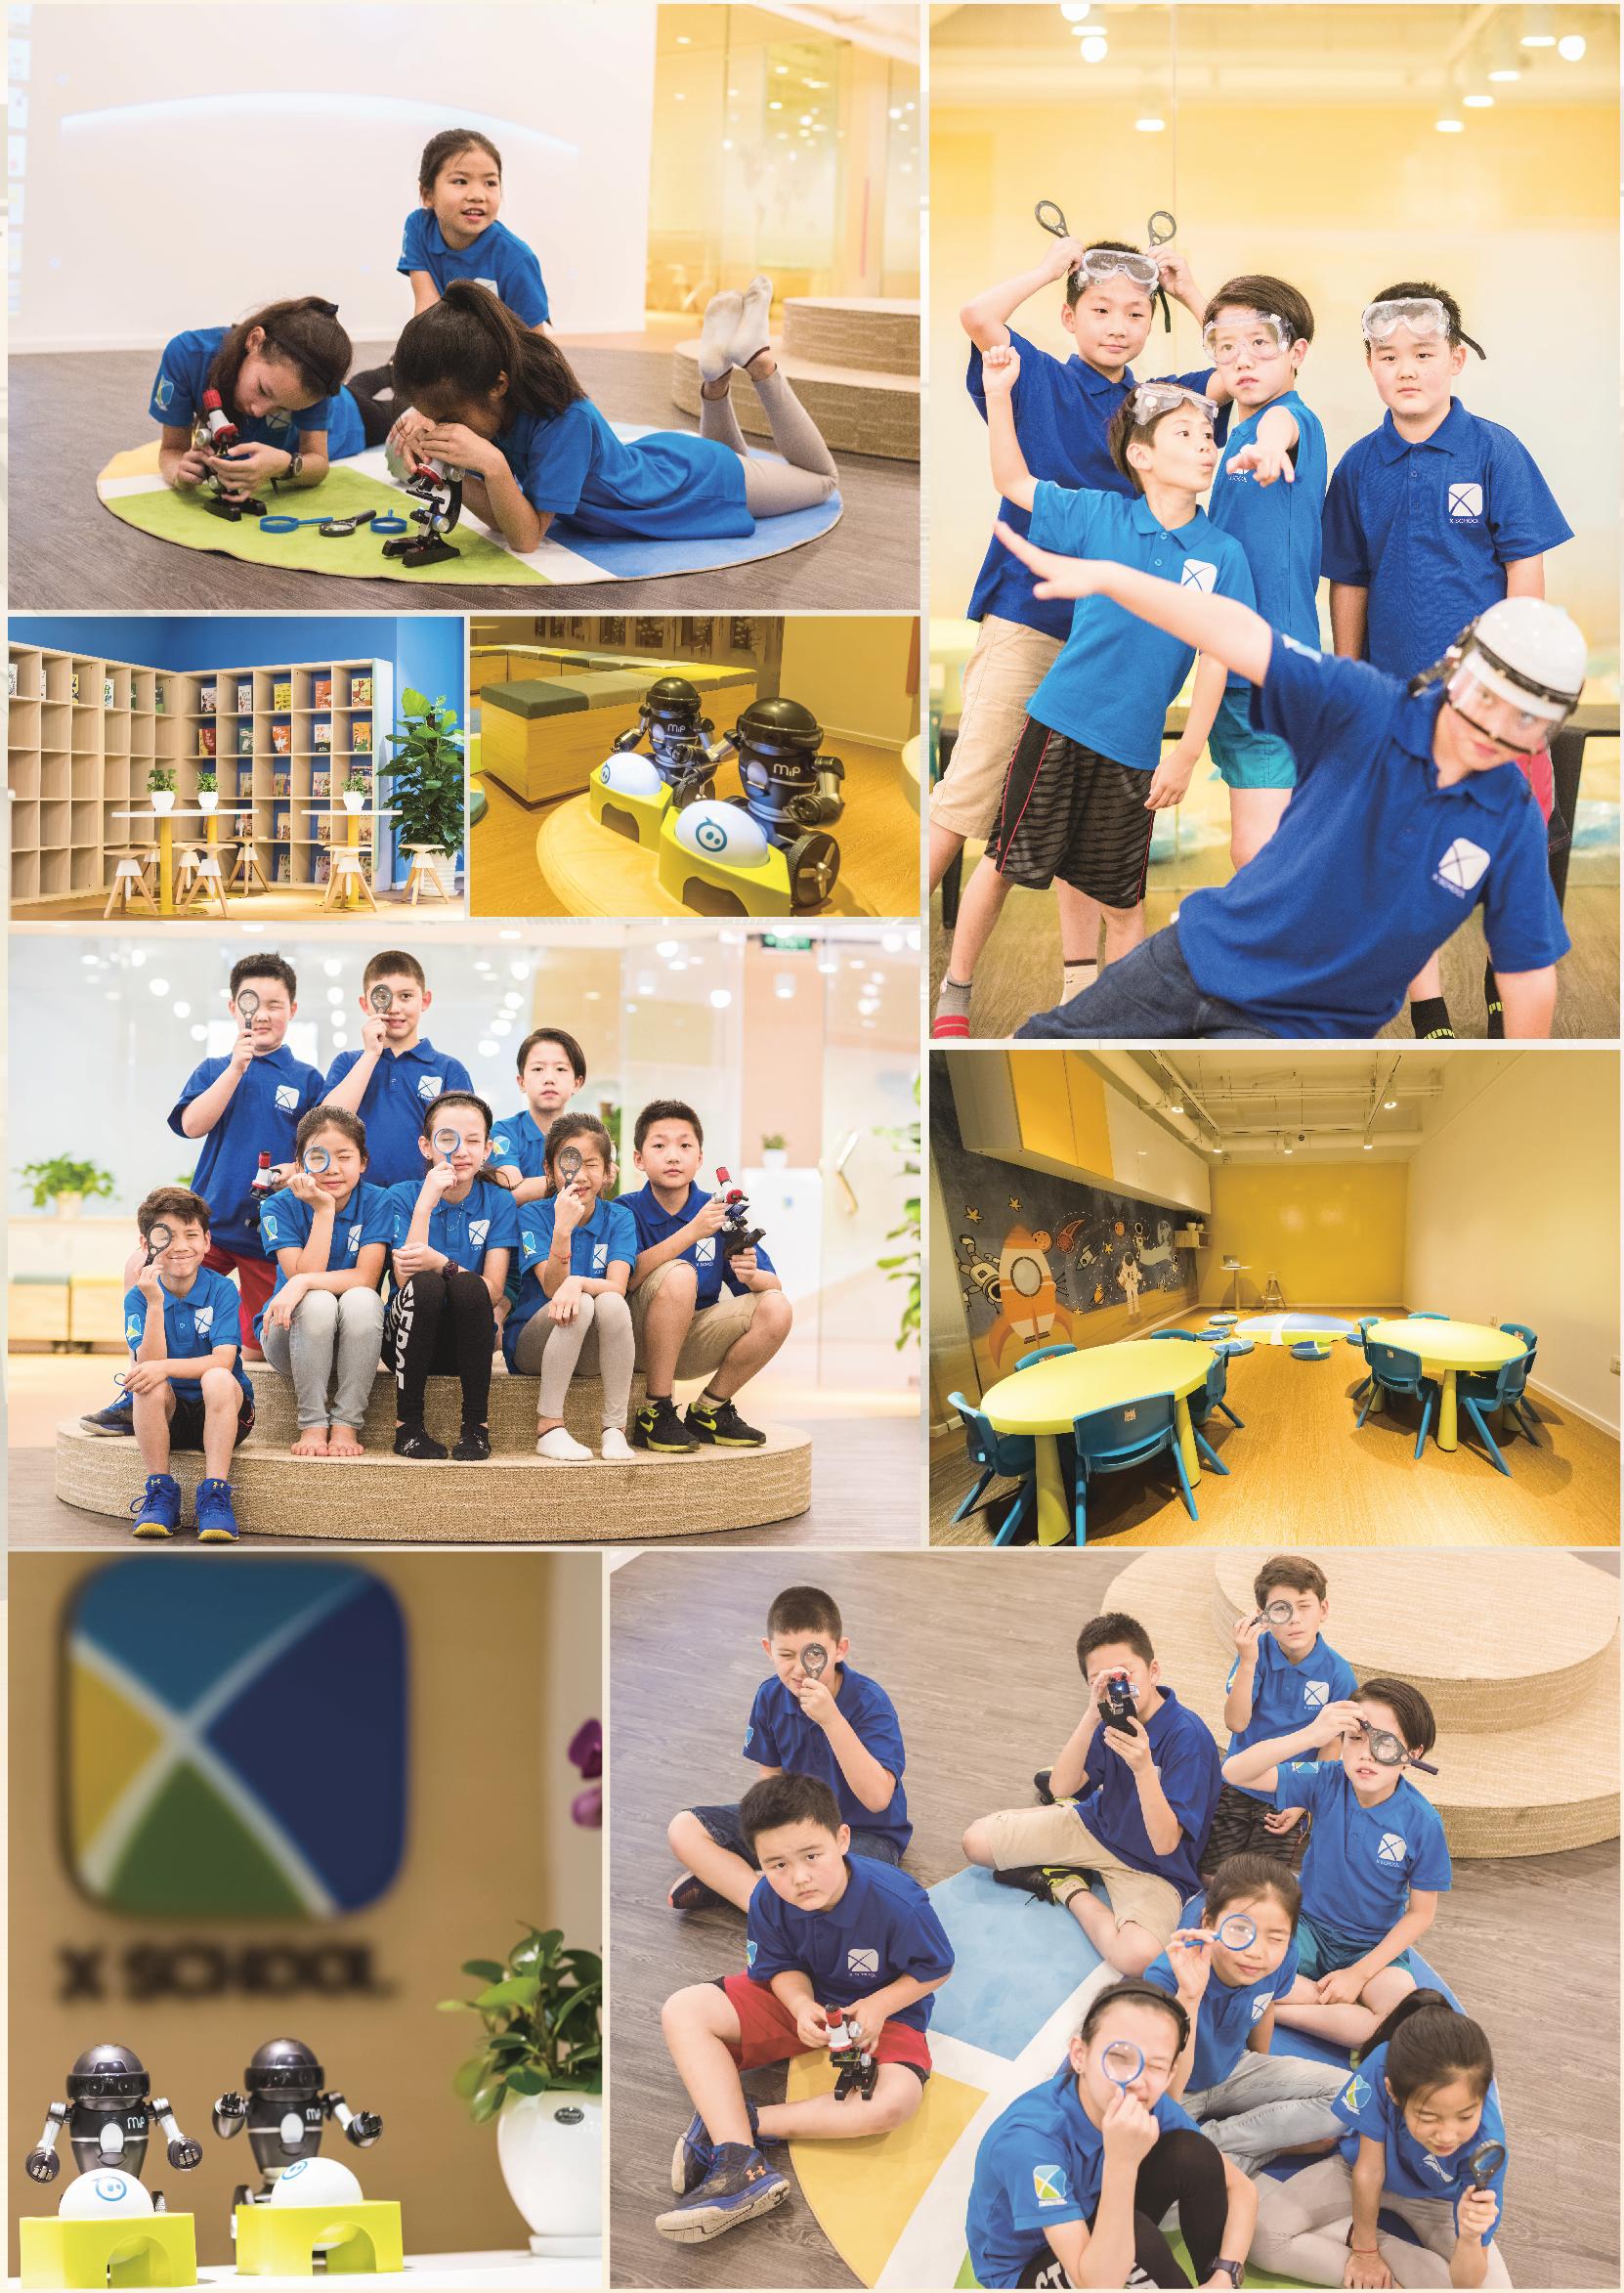 X SCHOOL image